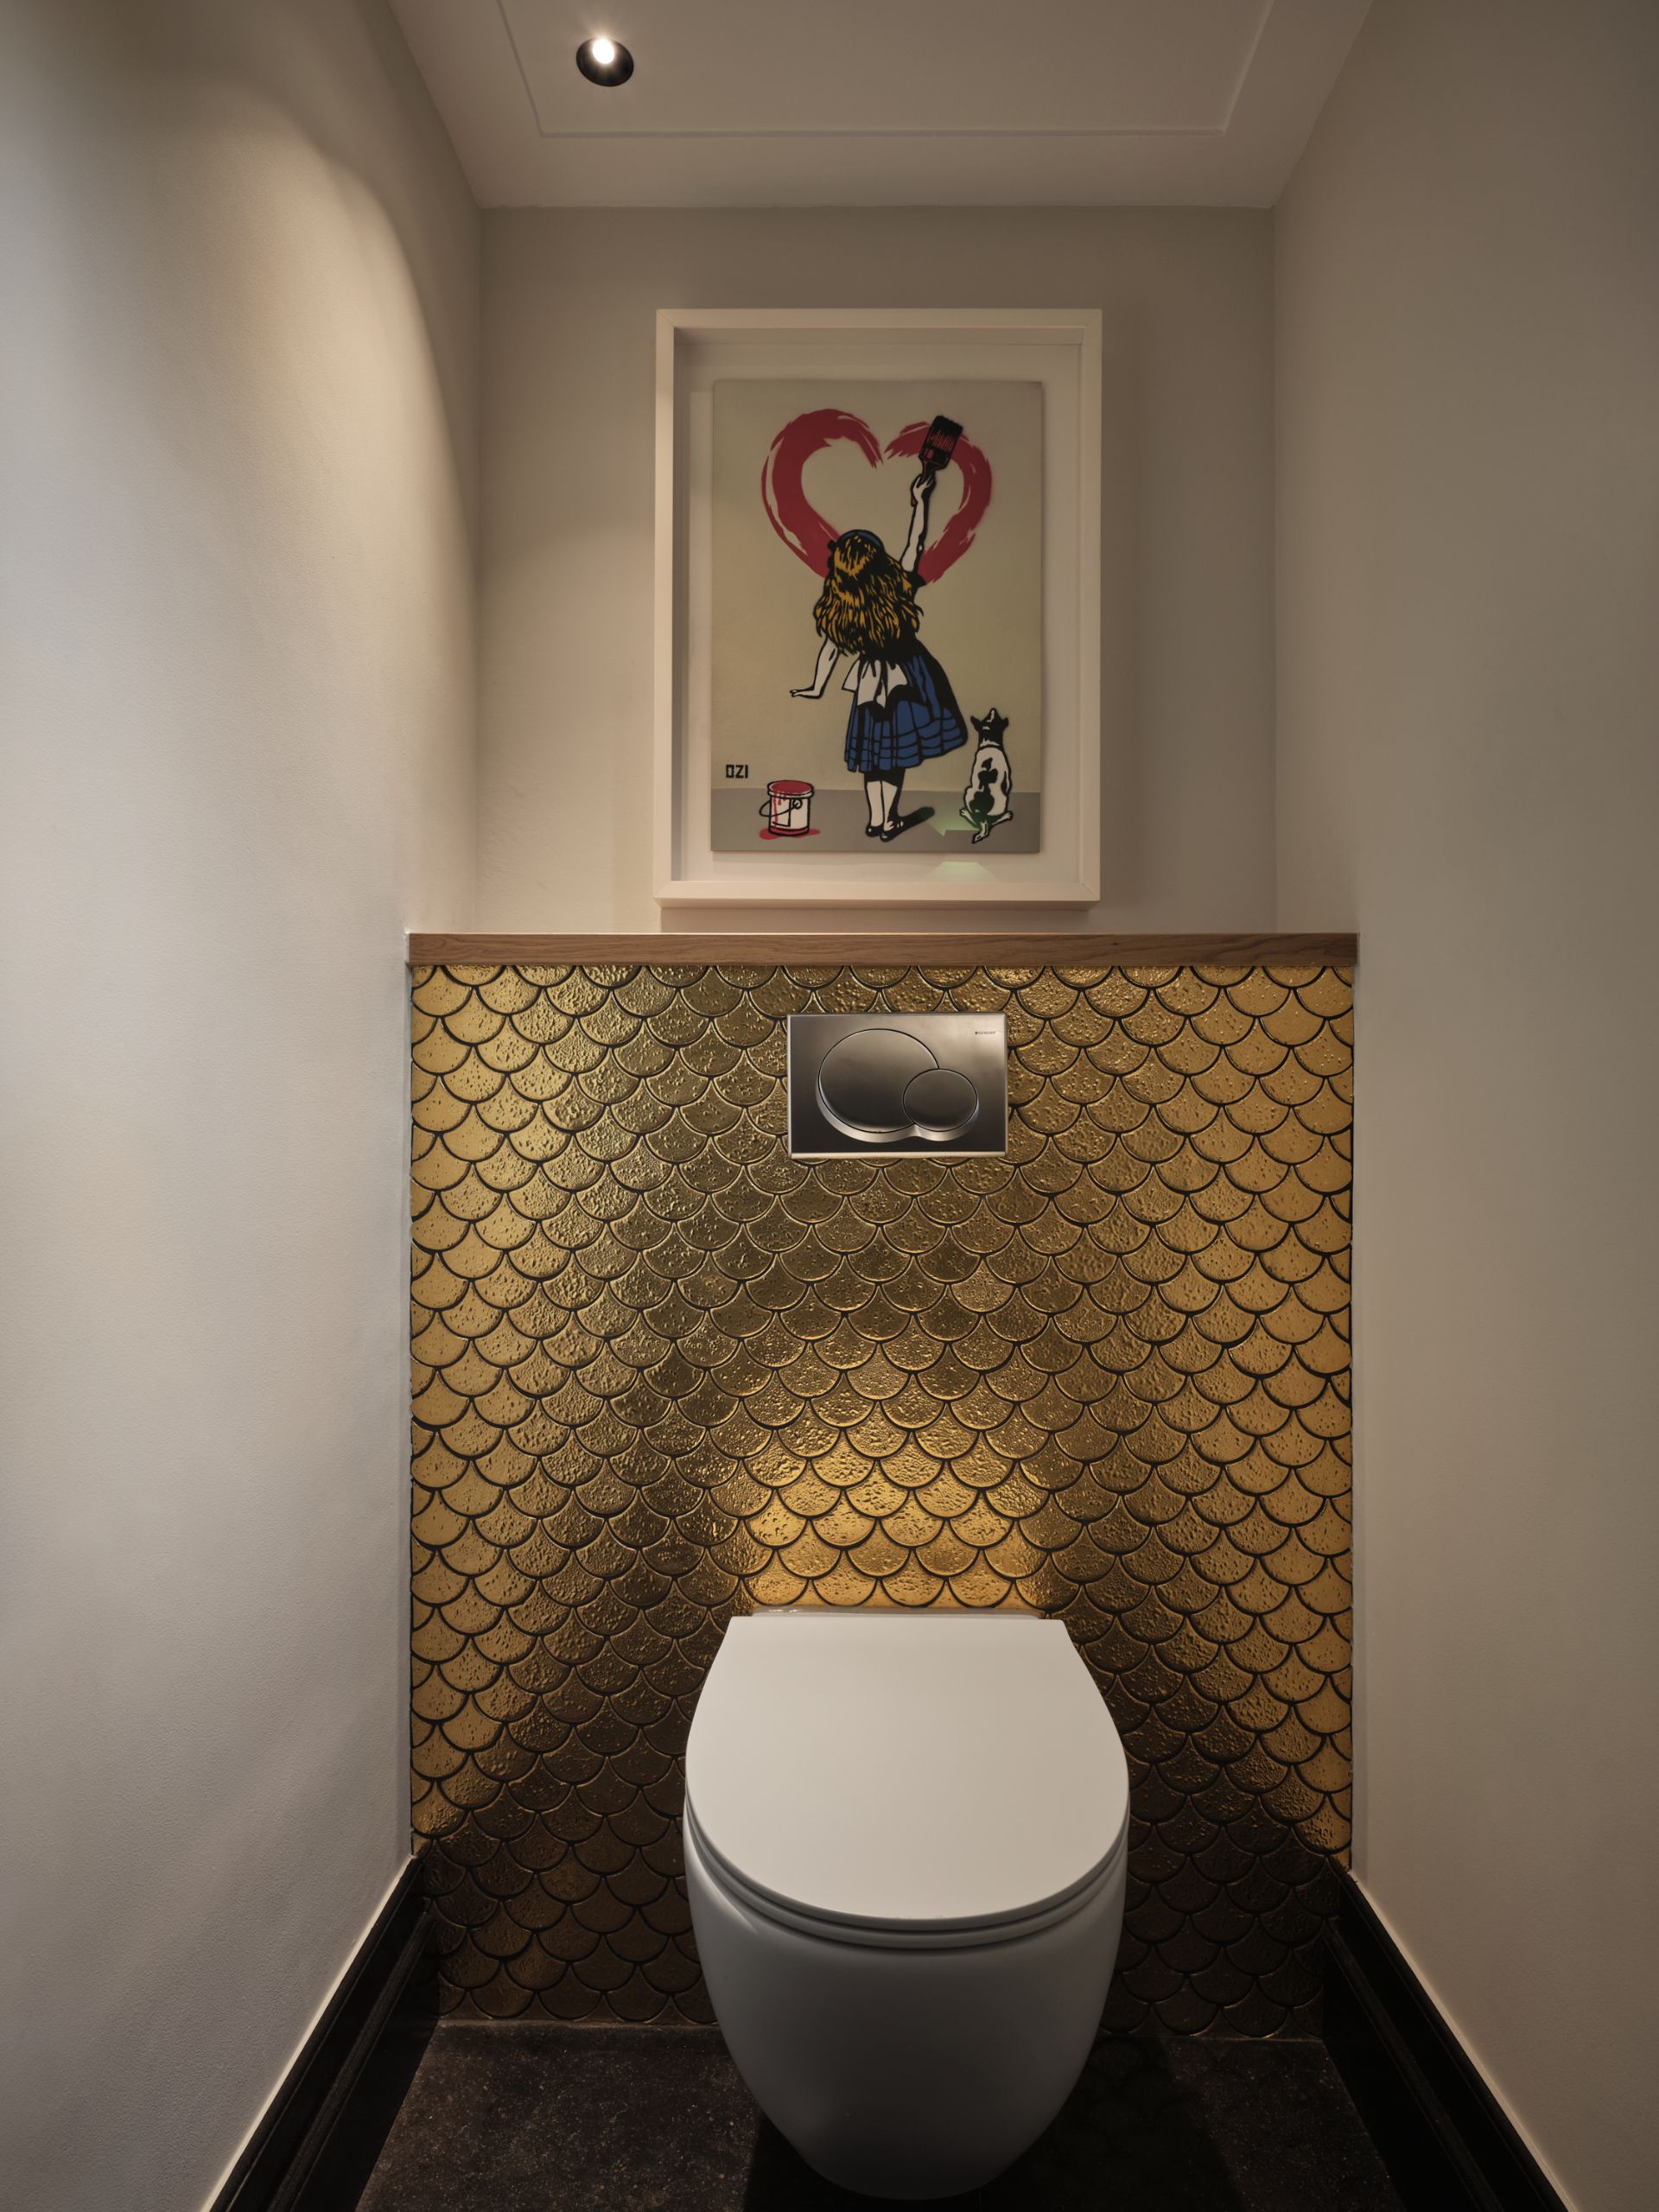 Foto: een badkamer met een moderne uitstraling      eerste kamer badkamers   016